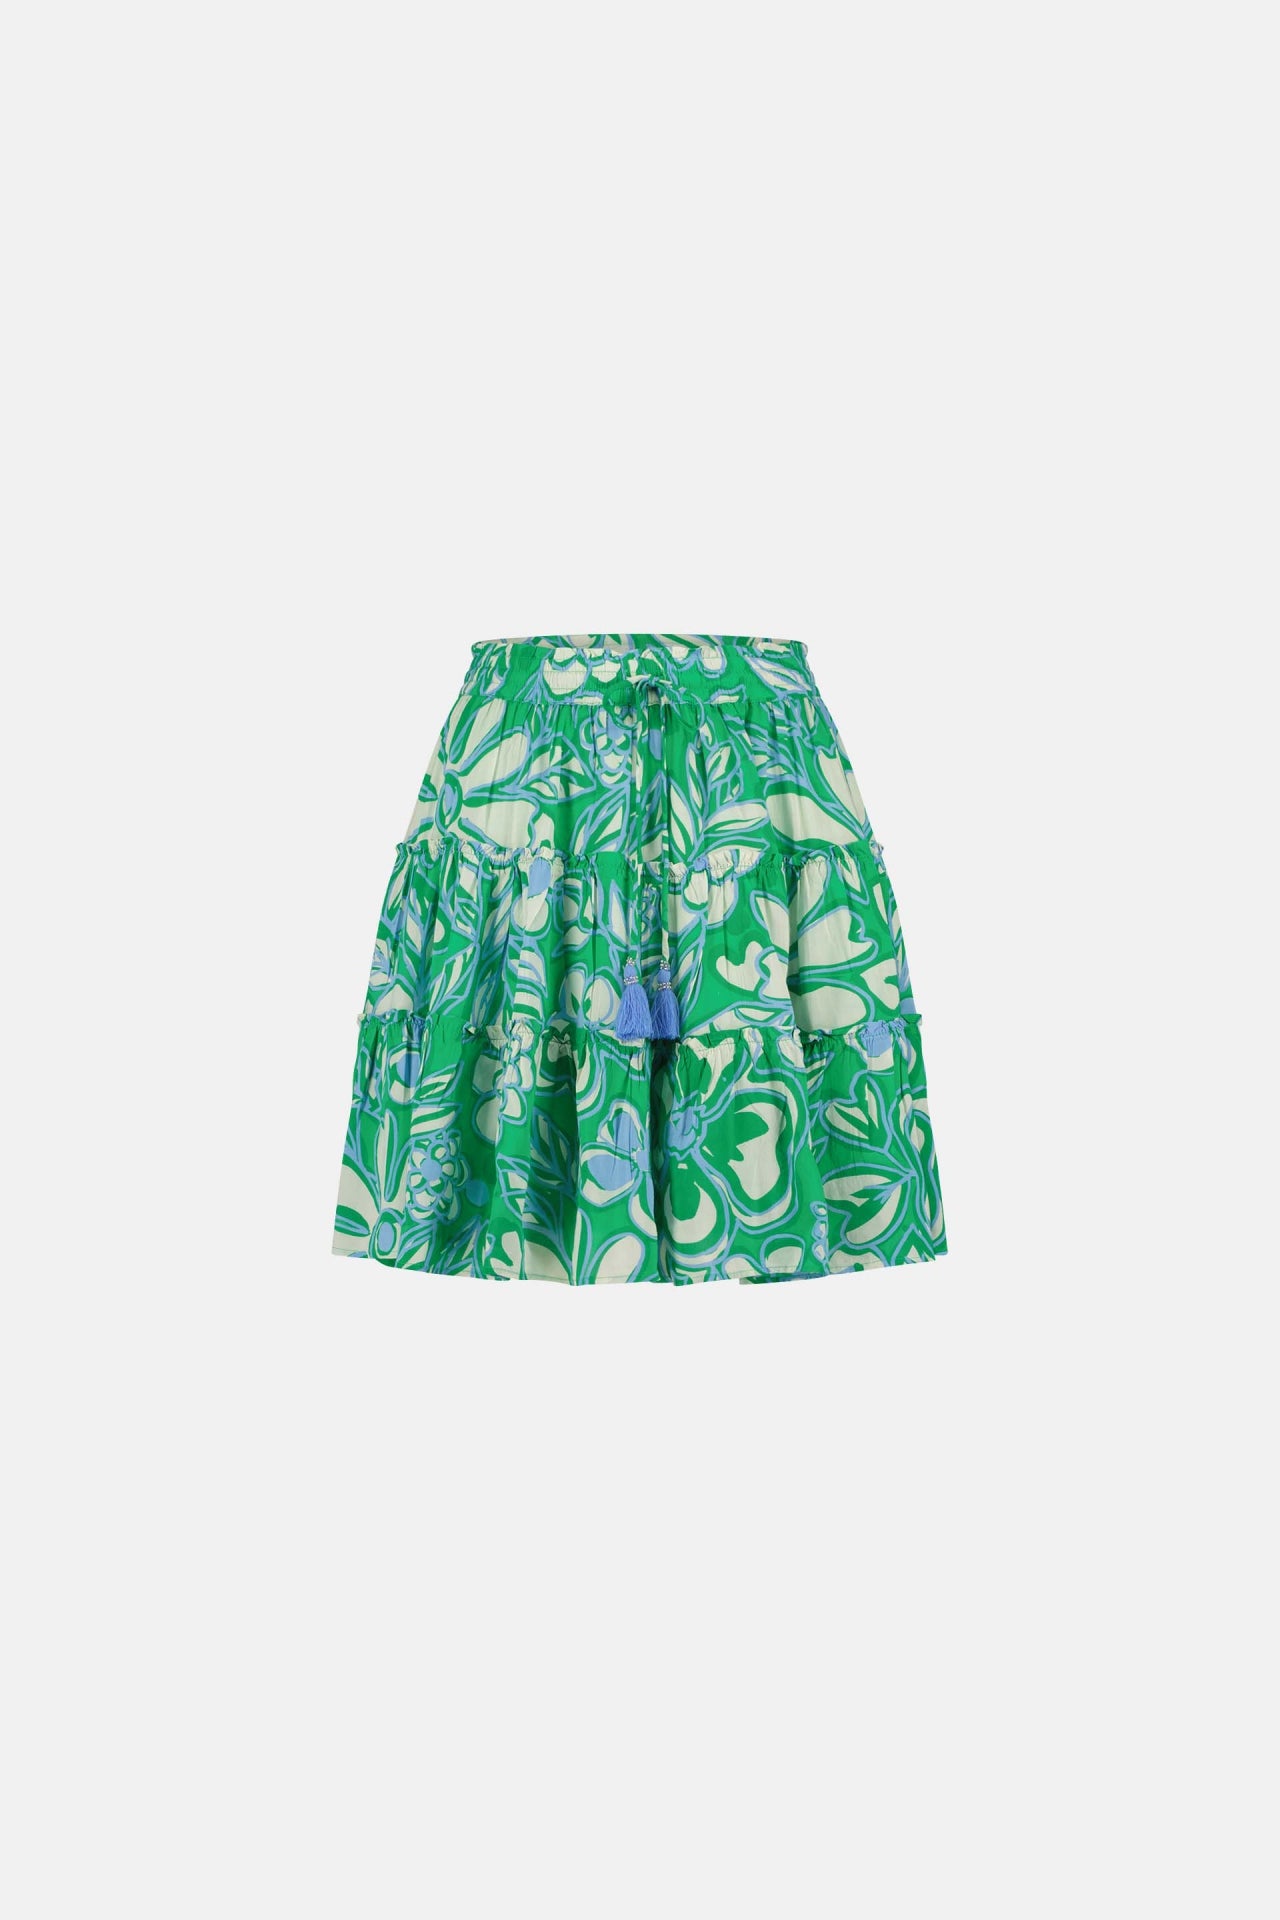 Mitzi Skirt | Green Apple/Grass Is